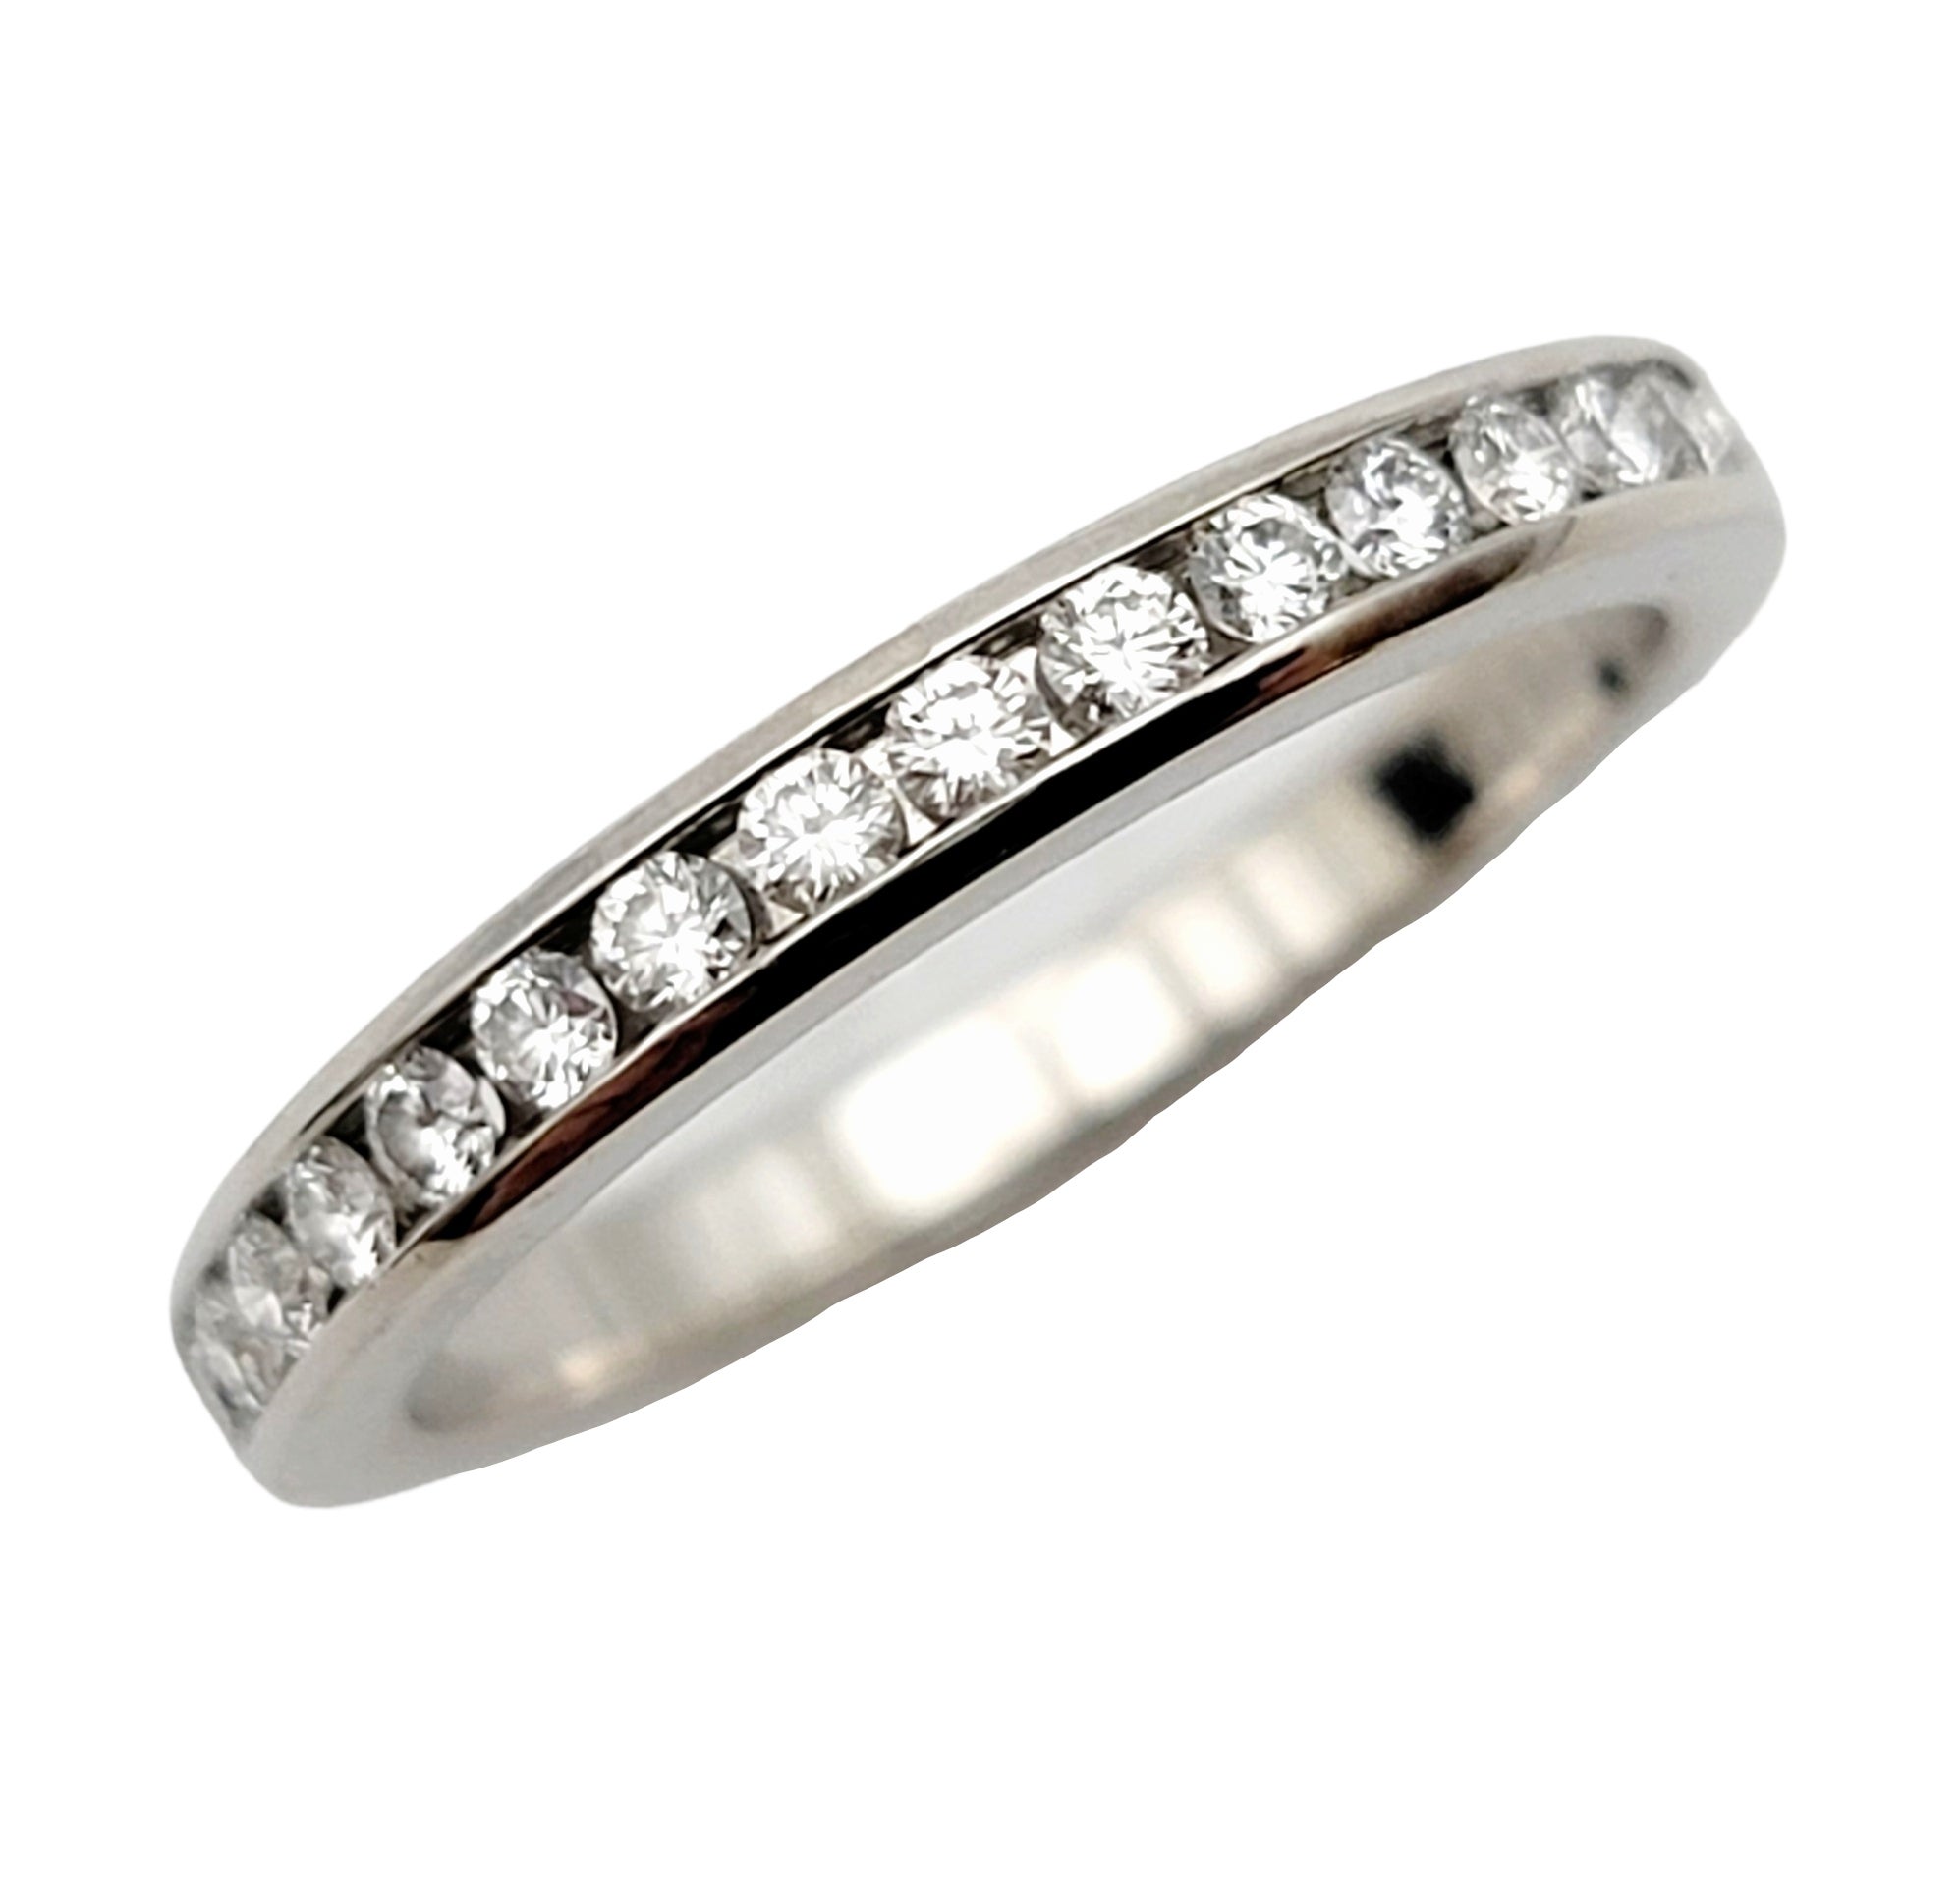 Taille de l'anneau : 5.25

Superbe anneau de semi-éternité en diamants de Tiffany & Co. Fondée en 1837 à New York, Tiffany & Co. est l'une des maisons de design de luxe les plus célèbres au monde, reconnue mondialement pour sa conception innovante